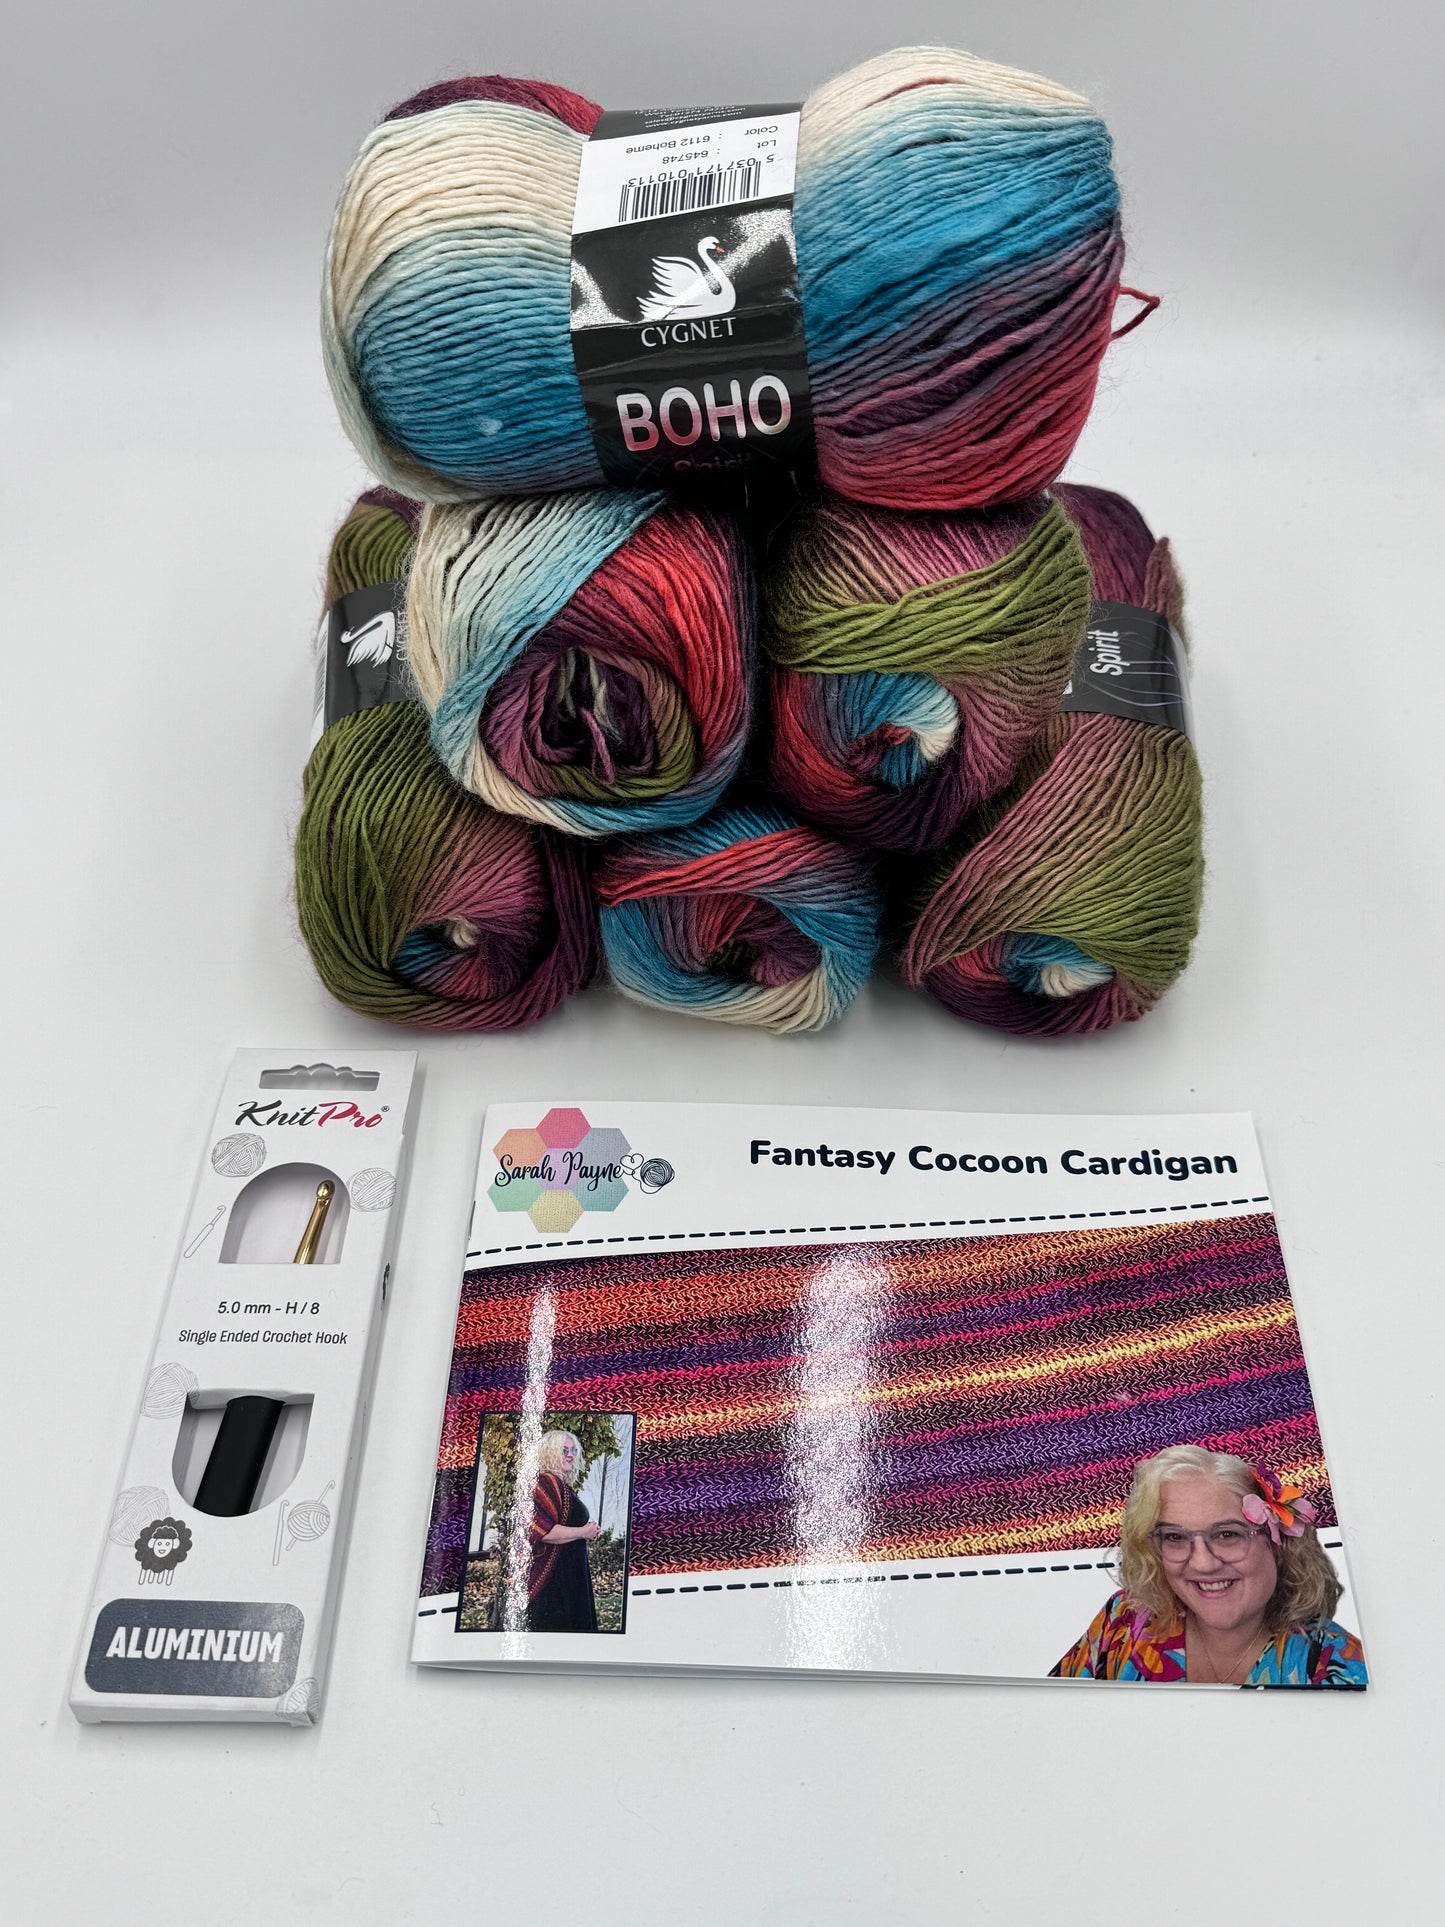 Sarah Payne's Crochet Cocoon Cardigan Kit - Choice of Colour